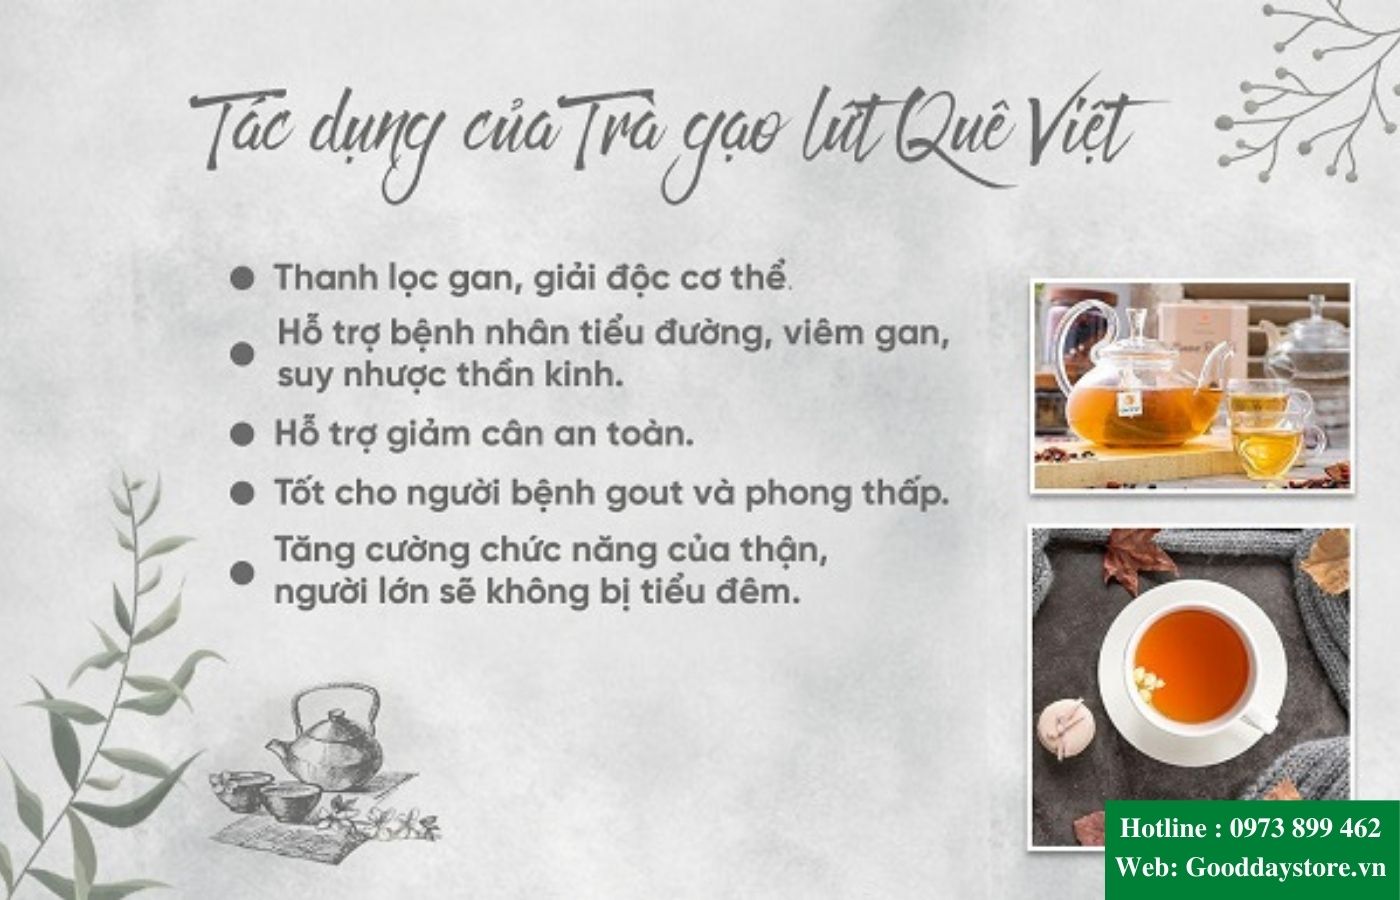 Tác dụng của trà gạo lứt Quê Việt